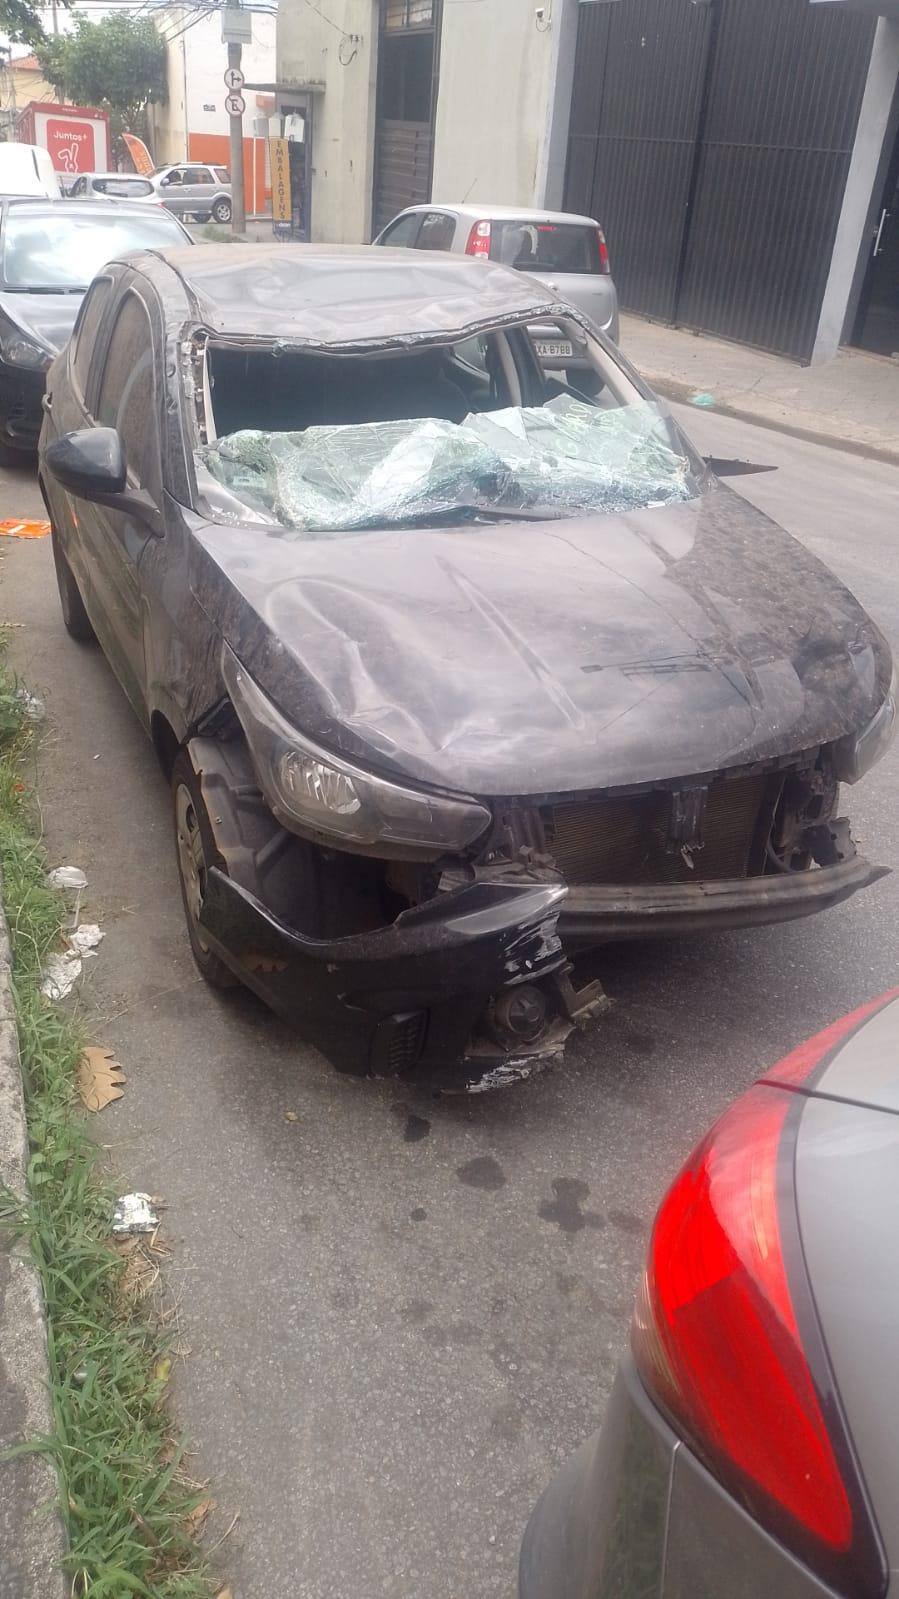 Vendedor Rodrigo Gomes Martins contratou serviço de proteção veicular, bateu o carro e reclama de estar há 4 meses sem o veículo